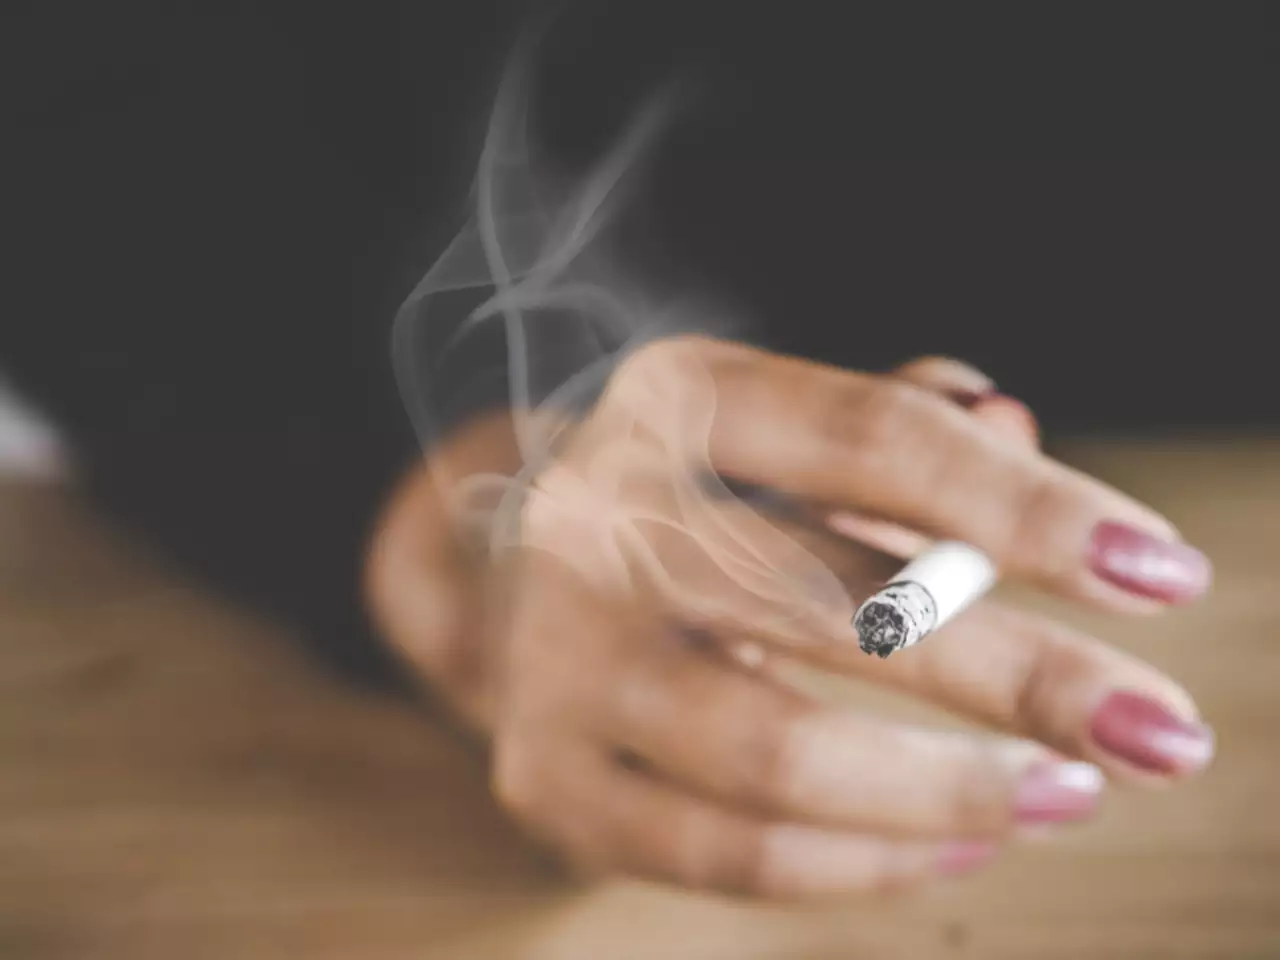 رشد ۱۳۳ درصدی استعمال دخانیات توسط دختران نوجوان /سیاستگذاری برای کاهش۳۰ درصدی مصرف تا سال ۲۰۲۵